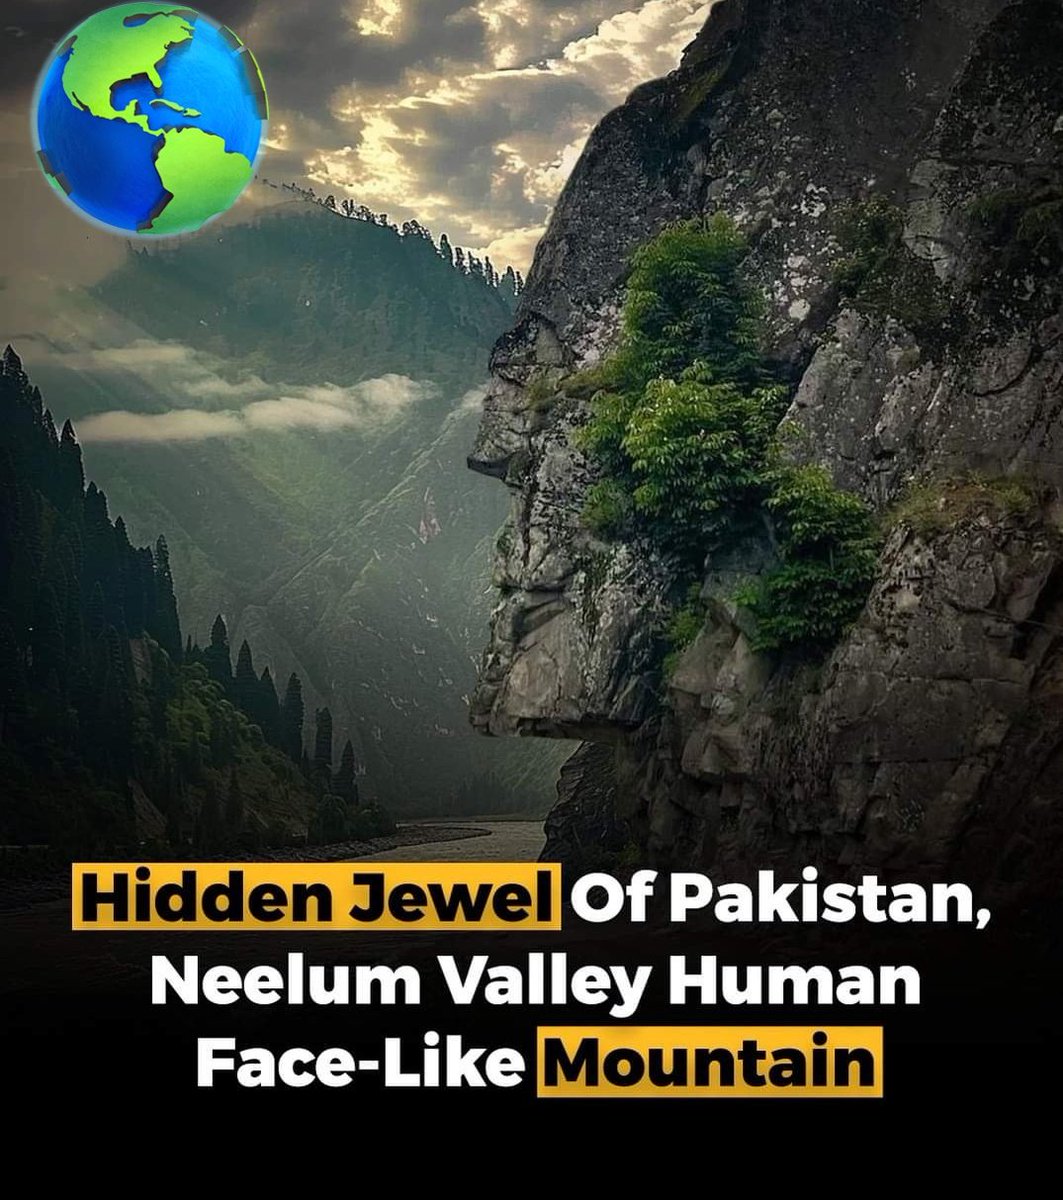 پاکستان کے دور دراز شمالی علاقوں میں ایک پوشیدہ خزانہ ہے - ایک پہاڑ جس کا قدرتی طور پر بنا ہوا چہرہ ہے جو انسان سے ملتا جلتا ہے۔  یہ ارضیاتی عجوبہ وادی نیلم میں واقع ہے، جو کہ ملک کے خوبصورت ترین مقامات میں سے ایک ہے۔
#humanface
#neelam
#Pakistan
#tourism